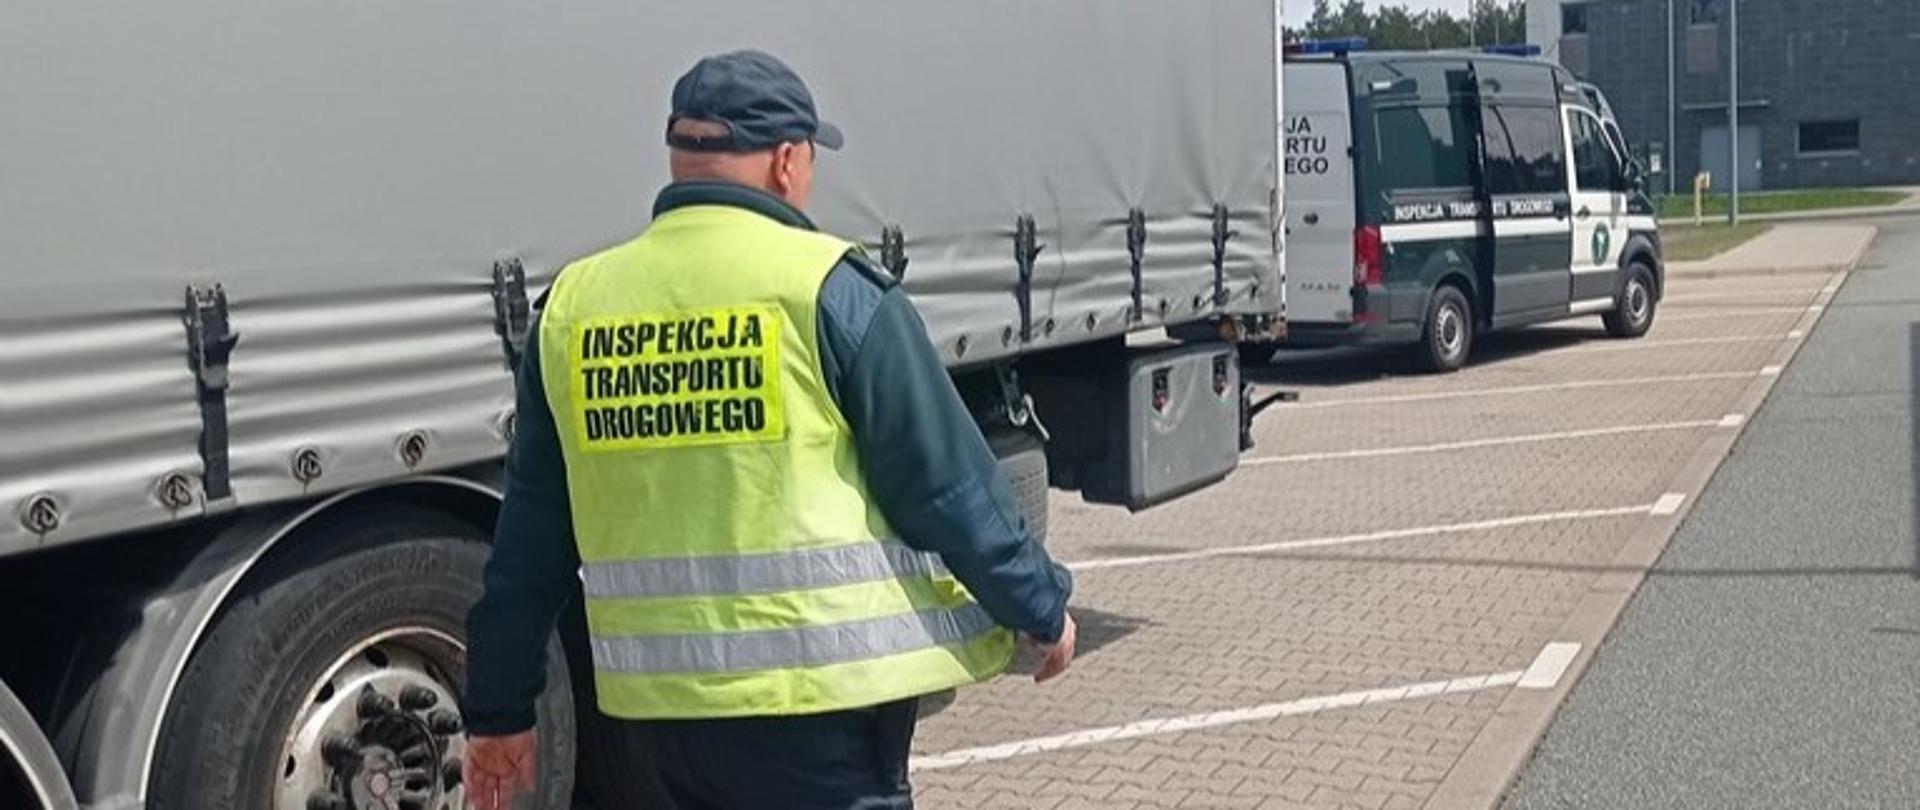 Na pierwszym planie: umundurowany inspektor lubuskiej Inspekcji Transportu Drogowego przechodzi obok naczepy kontrolowanego zestawu ciężarowego. Za pojazdem ciężarowym stoi oznakowany furgon Inspekcji Transportu Drogowego.